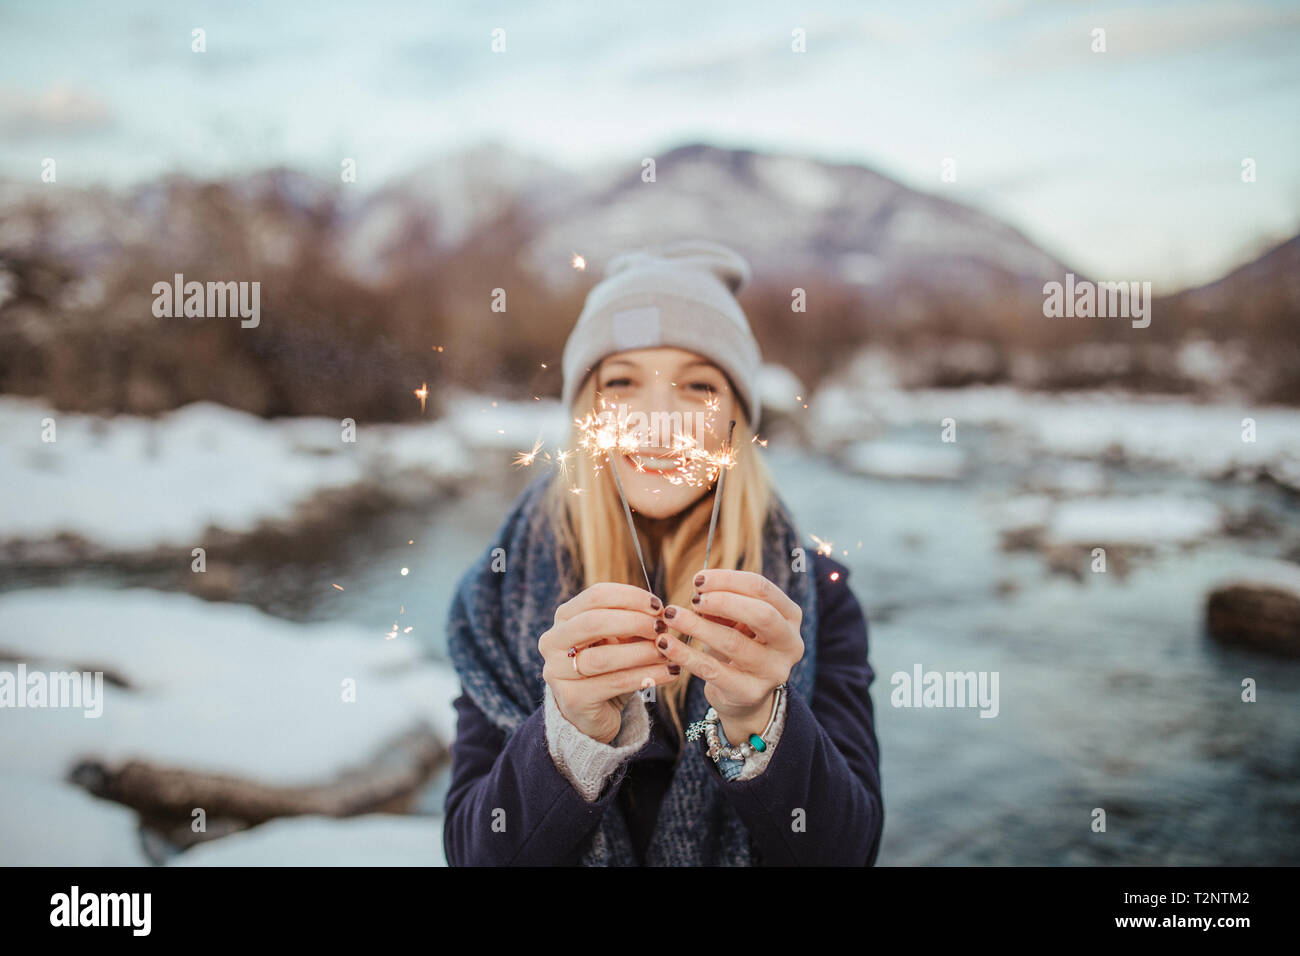 Femme au chapeau tricoté holding sparklers sur berges couvertes de neige, portrait, Orta, Piemonte, Italie Banque D'Images